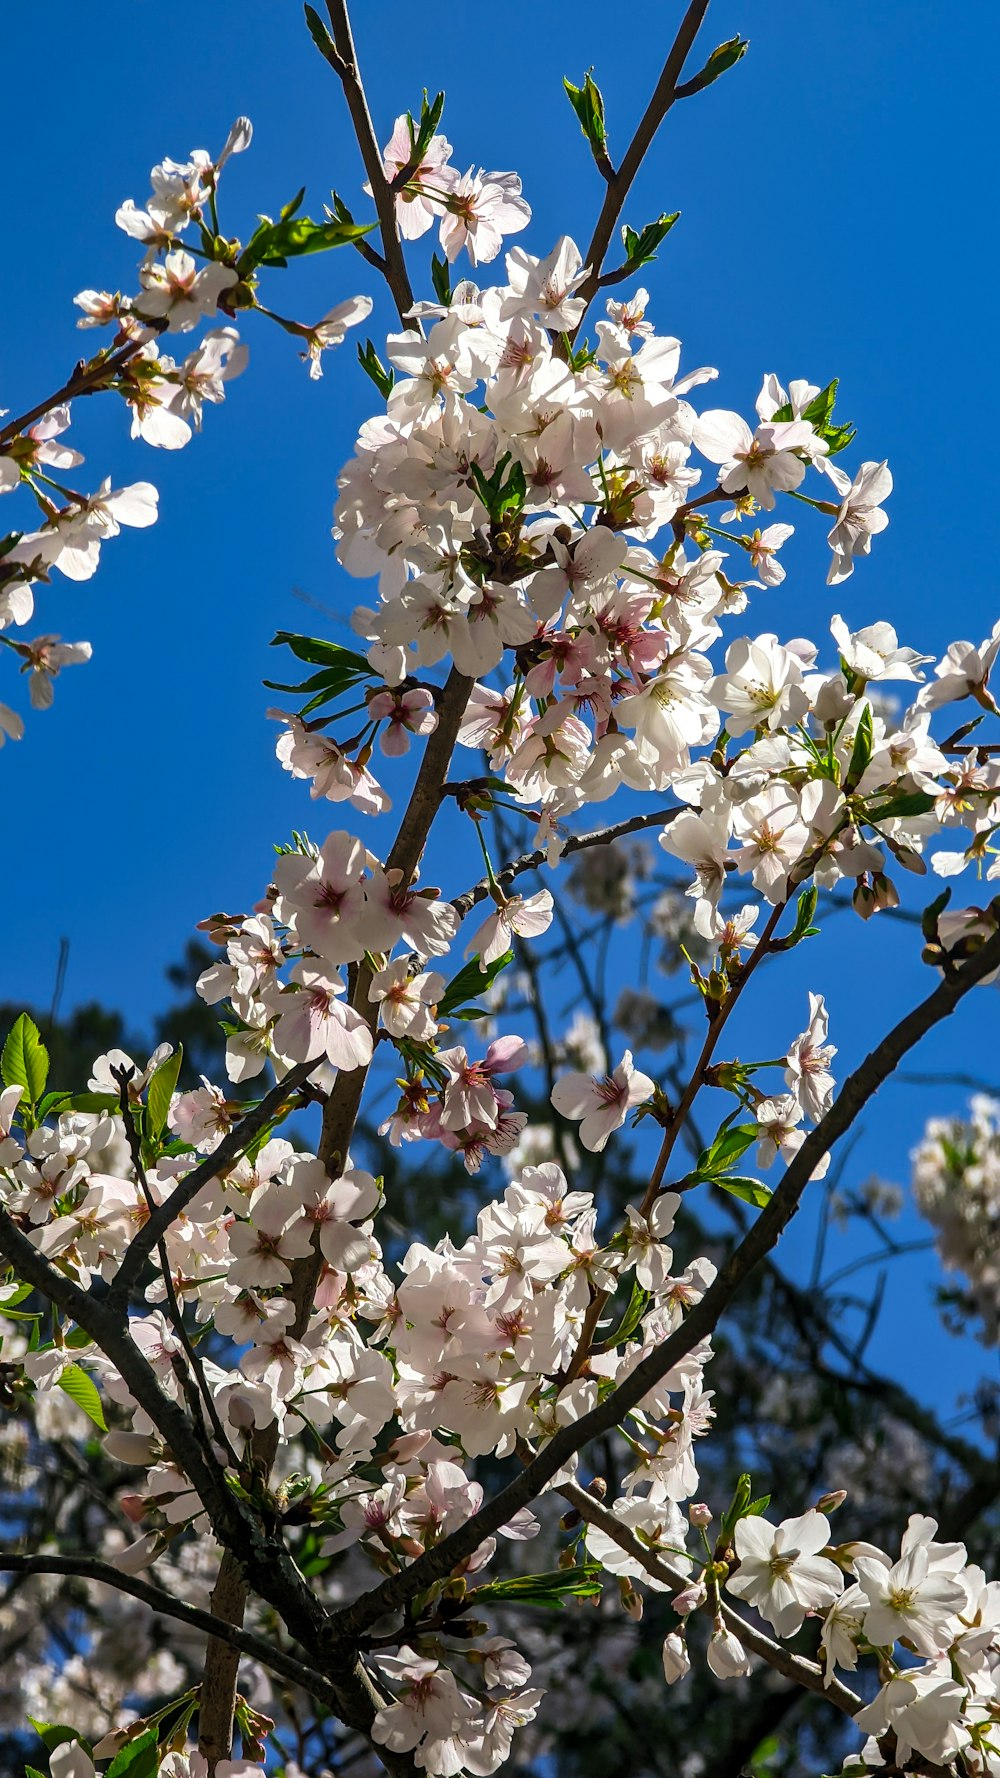 Un arbre avec beaucoup de fleurs blanches devant un ciel bleu